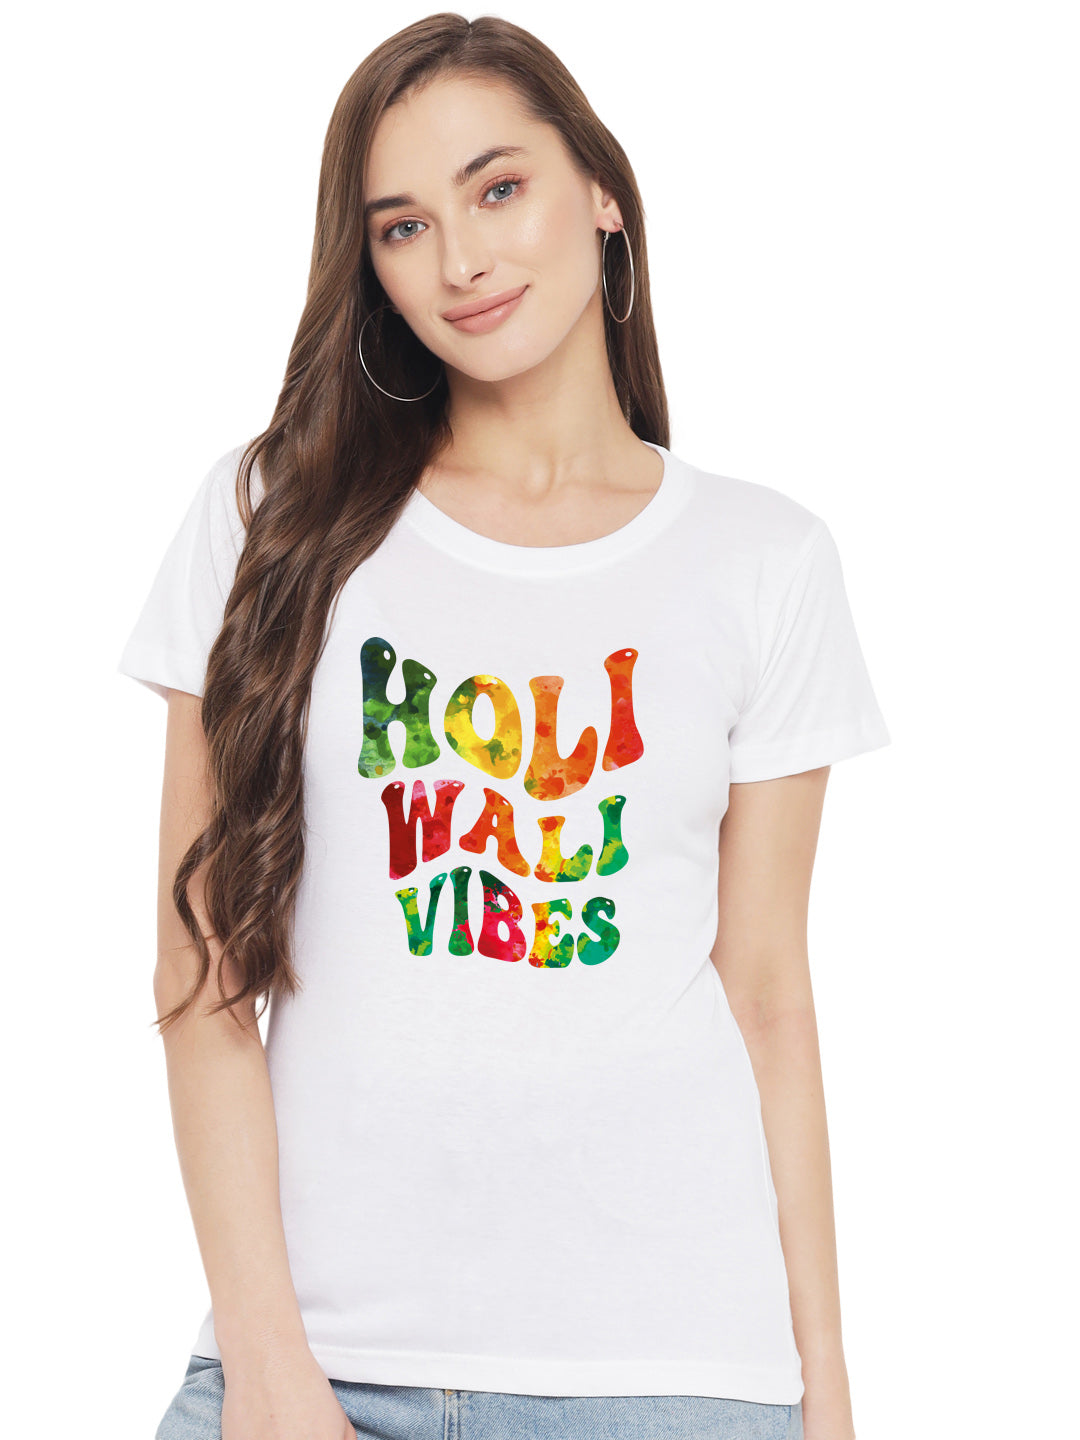 Holi Wali Vibes Women's Tshirt